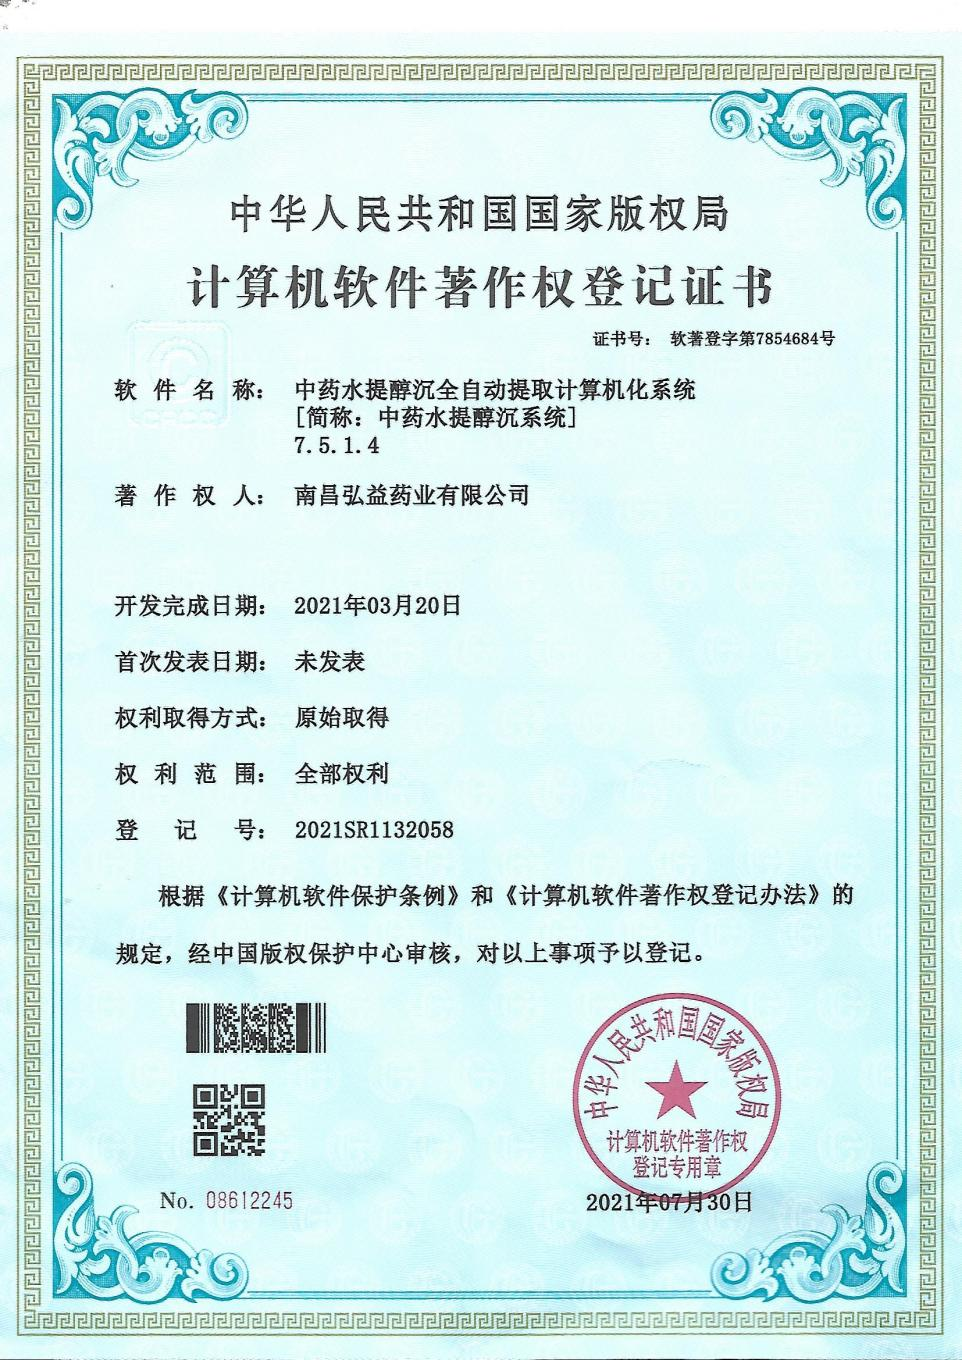 adobe中国认证设计师 accd 证书_著作演绎权_adobe软件著作权登记证书